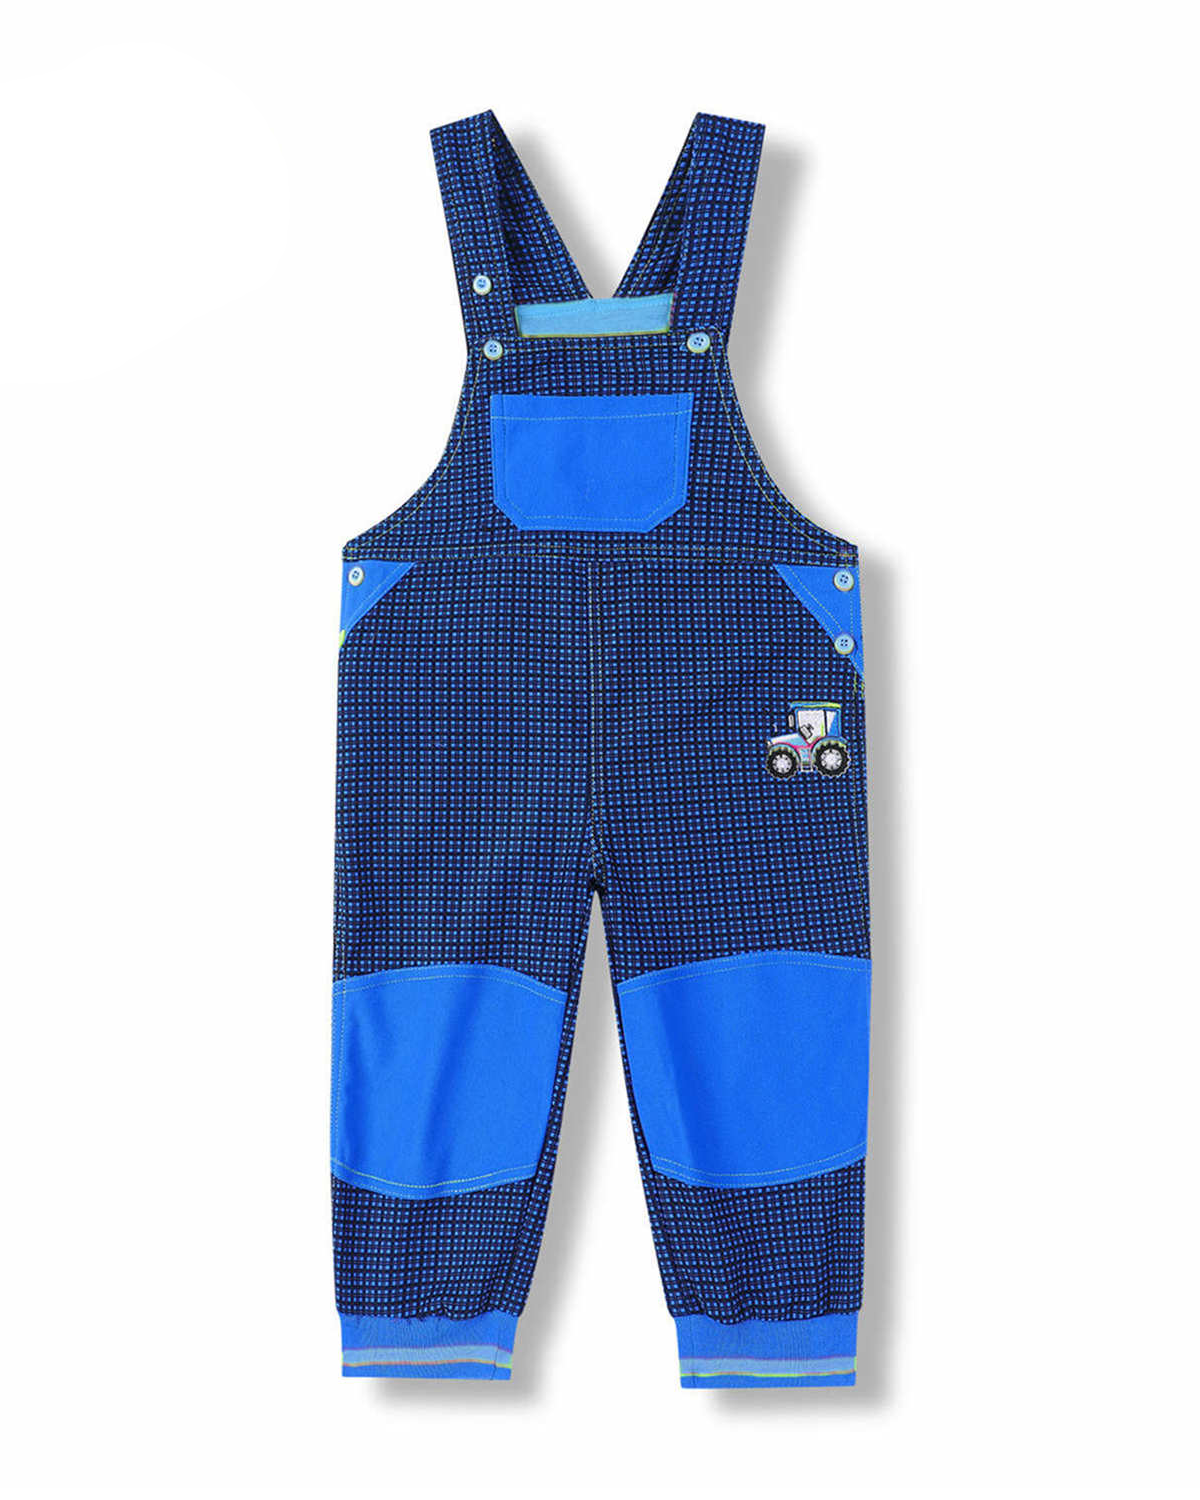 Chapecké laclové outdoorové kalhoty - KUGO G8557, modrá / modré knoflíky Barva: Modrá, Velikost: 80